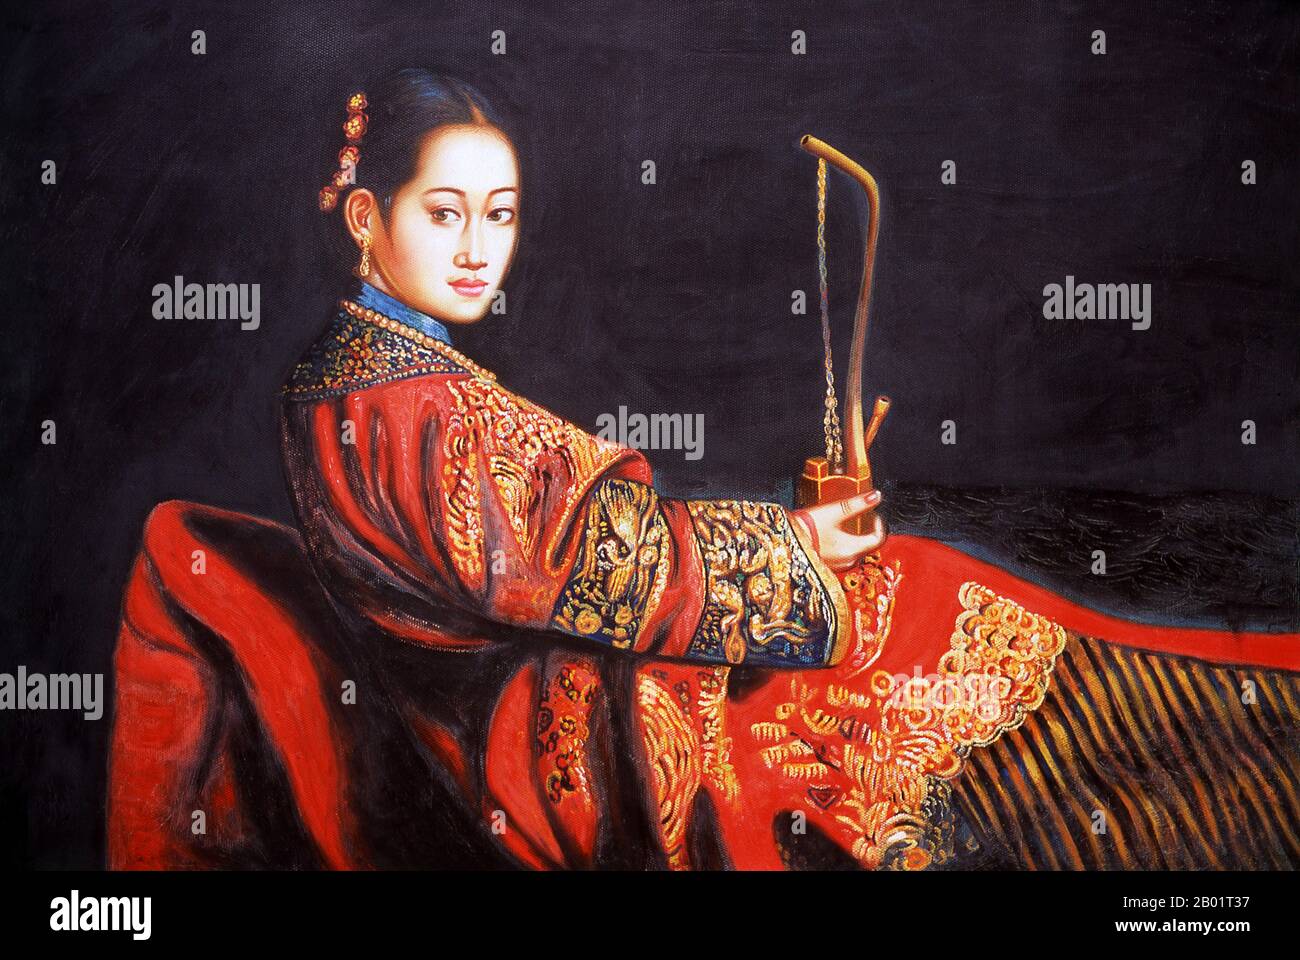 Cina: Consorte Rong o Iparhan, "la concubina profumata" (1734-1788), dell'imperatore Qianlong. Pittura contemporanea (fine XX secolo) a Chinibagh, Kashgar. La fragrante concubina (cinese: Xiāngfēi; uiguro: Iparxan, Khoja Iparhan) è una figura nella leggenda cinese che fu presa come consorte dall'imperatore Qianlong durante il XVIII secolo. Anche se le storie su di lei sono ritenute mitiche, potrebbero essere state basate su una reale concubina della Cina occidentale che entrò nell'harem dell'imperatore nel 1760 e che portava il titolo di corte di Rong Fei. Foto Stock